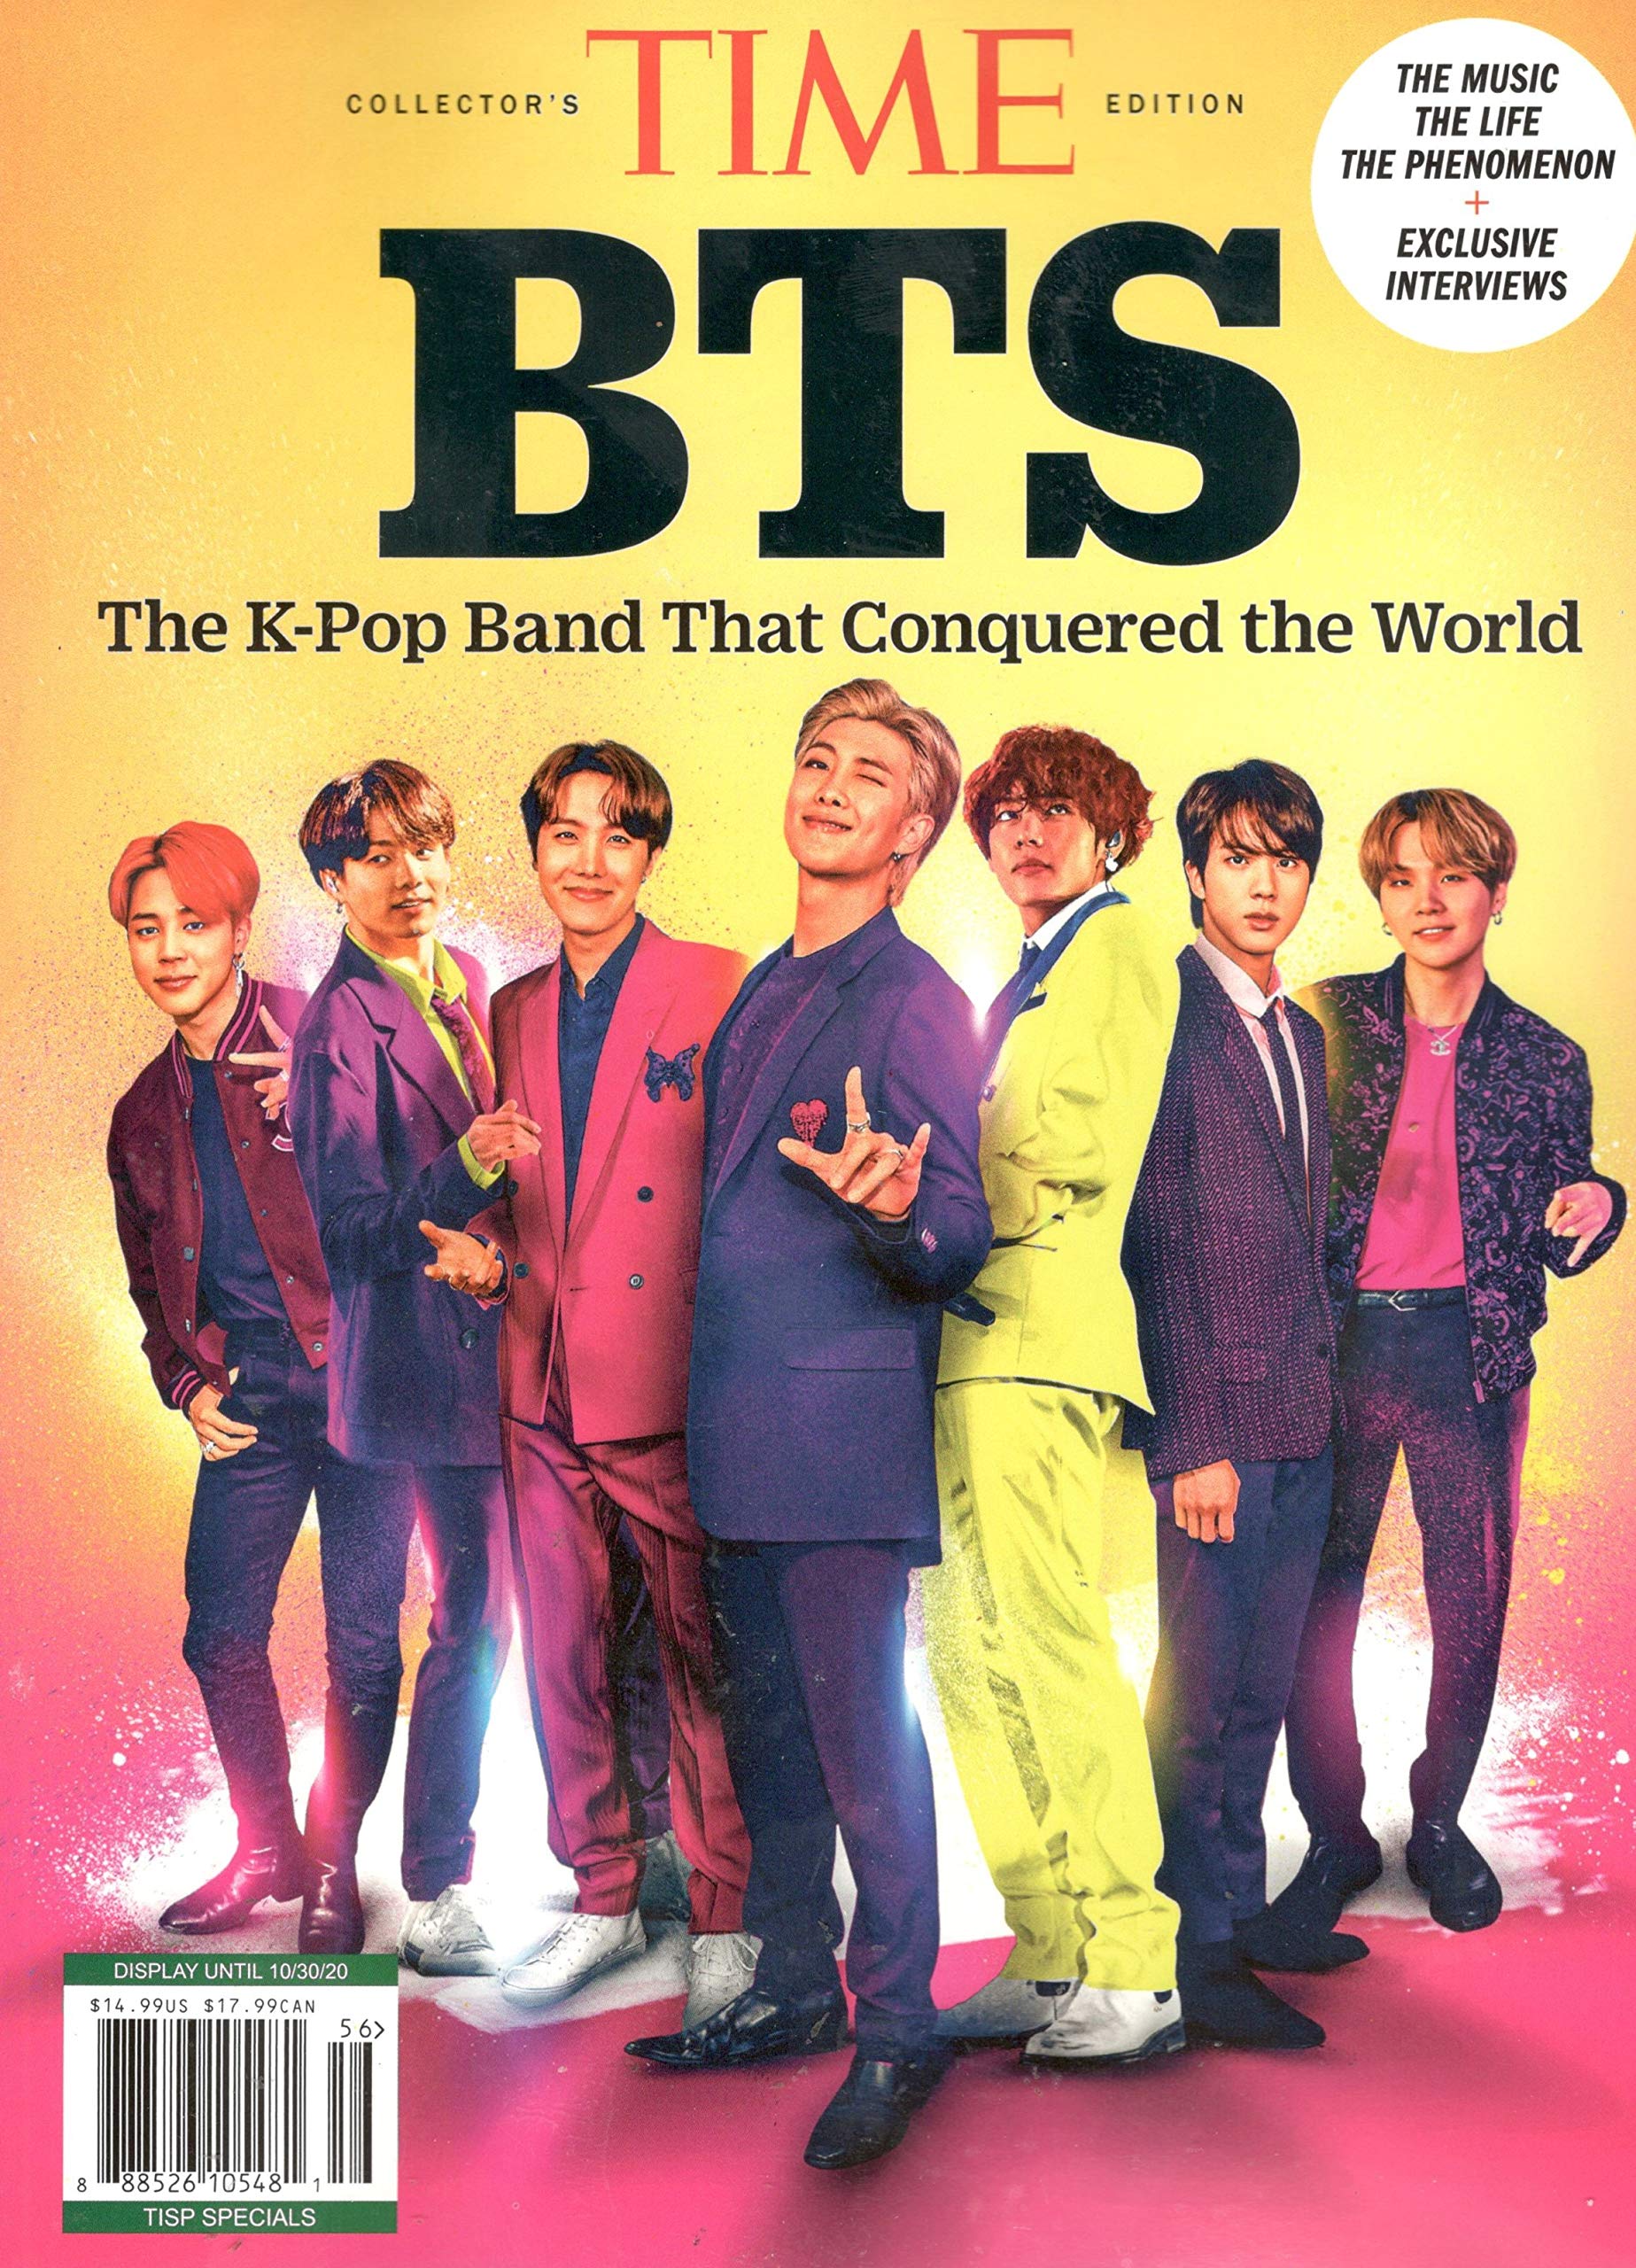 Đây là bìa tạp chí số 1 thế giới Time và nhóm nhạc quốc dân BTS, đúng vậy, bạn không nhầm đâu!